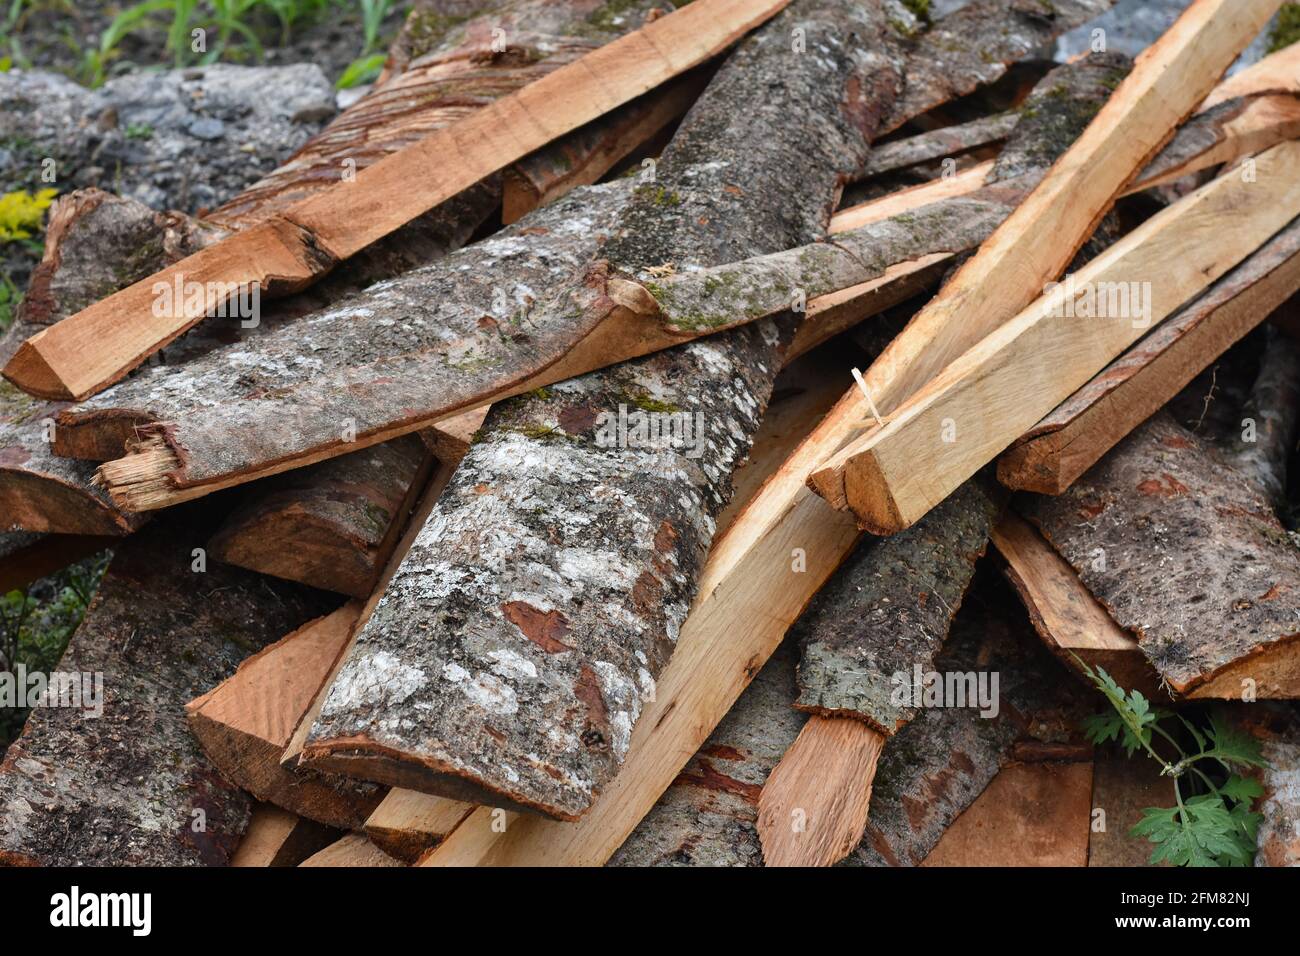 Tronchi d'albero con motivo rosso brunastro in fibra di legno chiaramente visibile Foto Stock